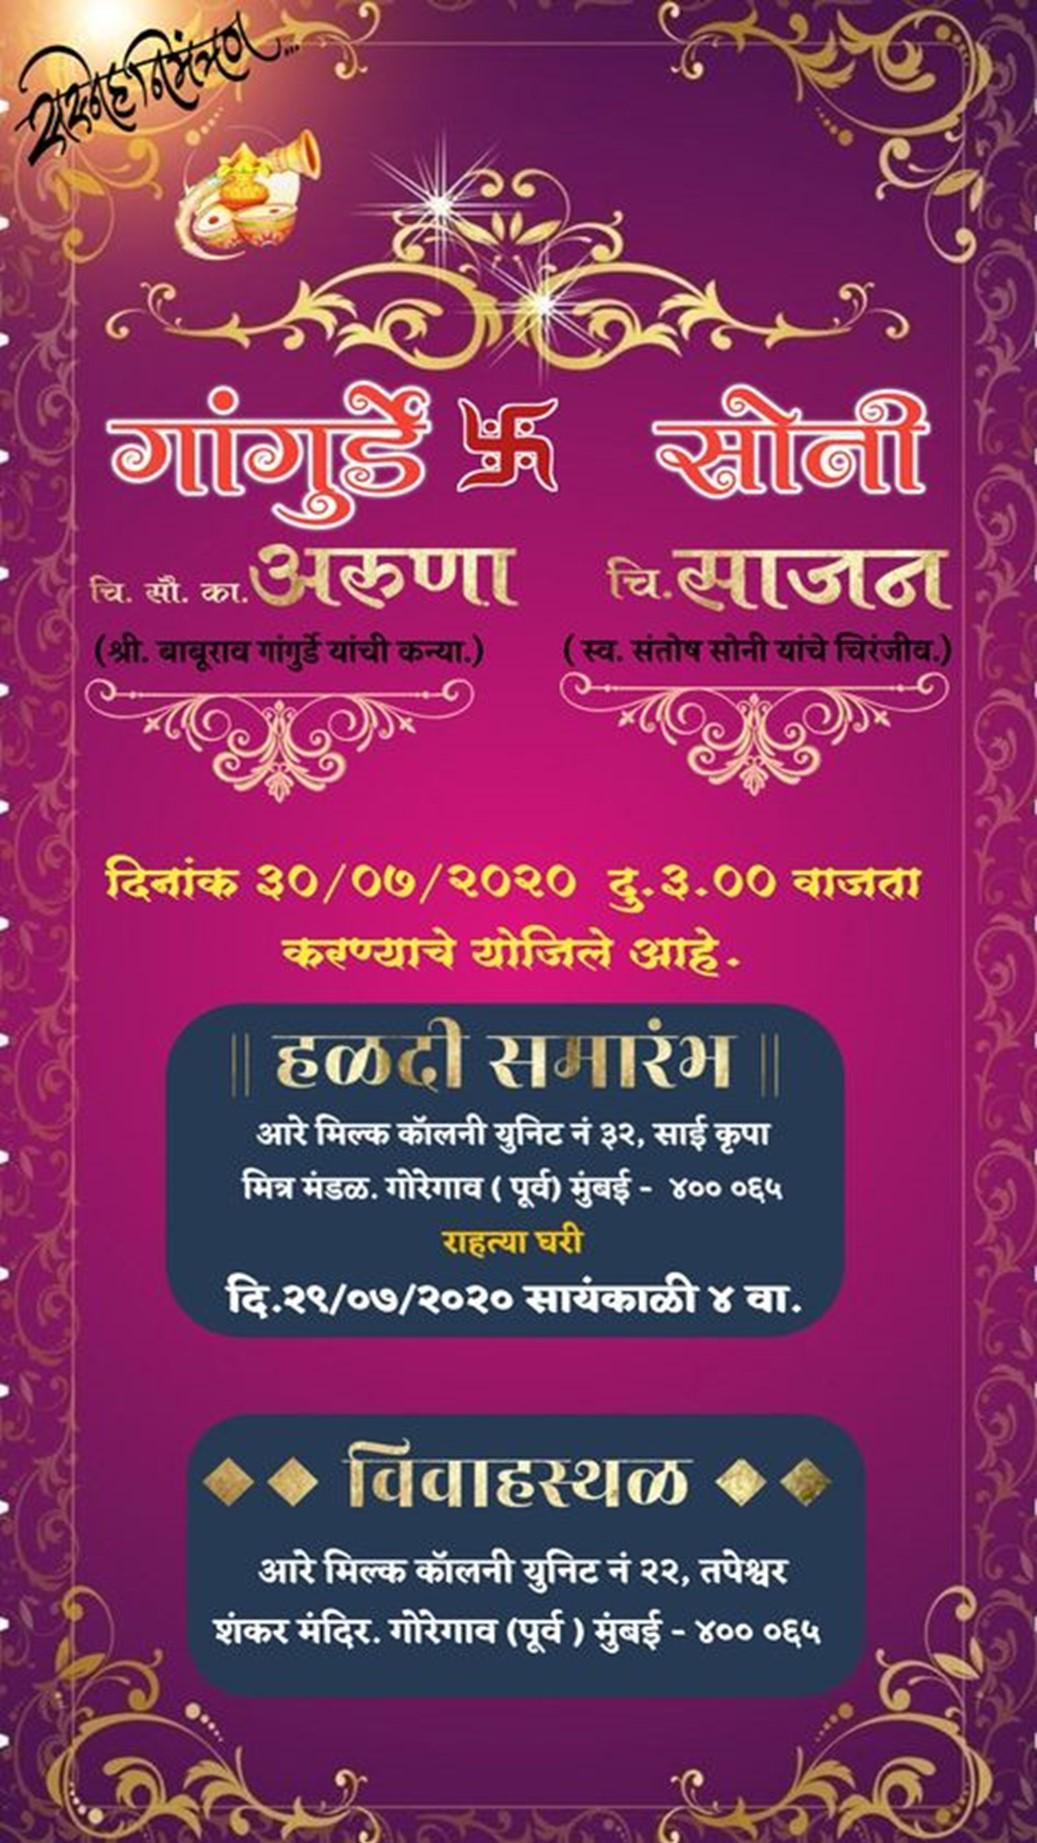 Marathi Lagna Patrika Maker & Wedding Card Maker APK for Android Download